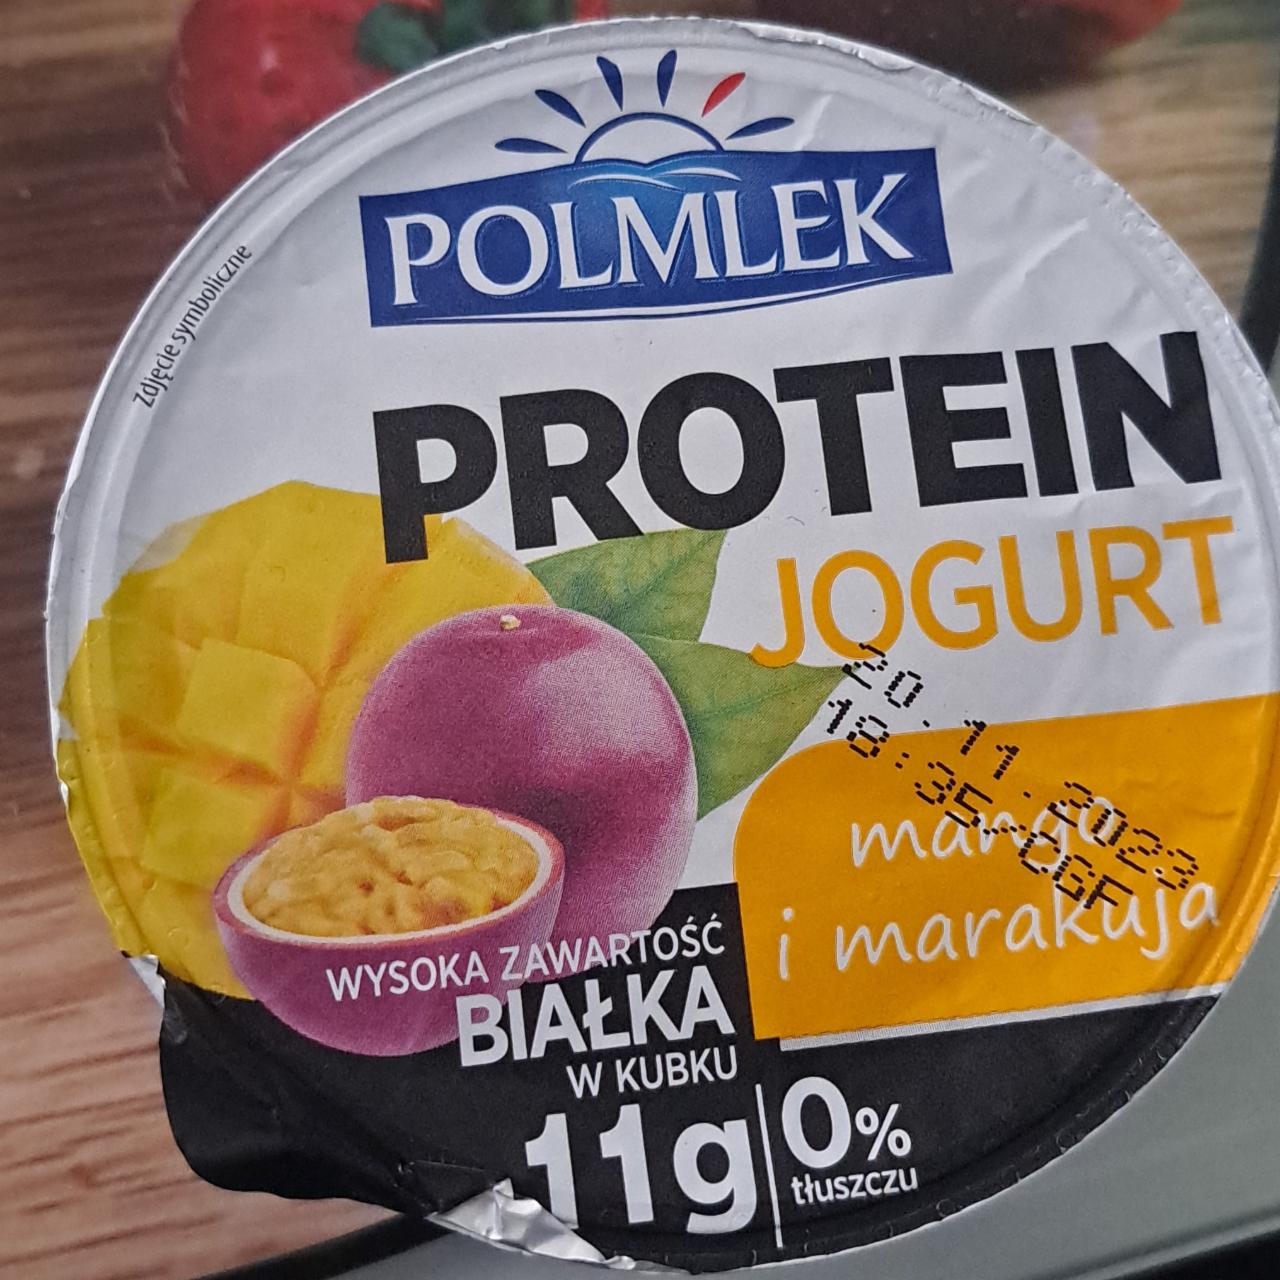 Zdjęcia - Protein jogurt mango i marakuja Polmlek